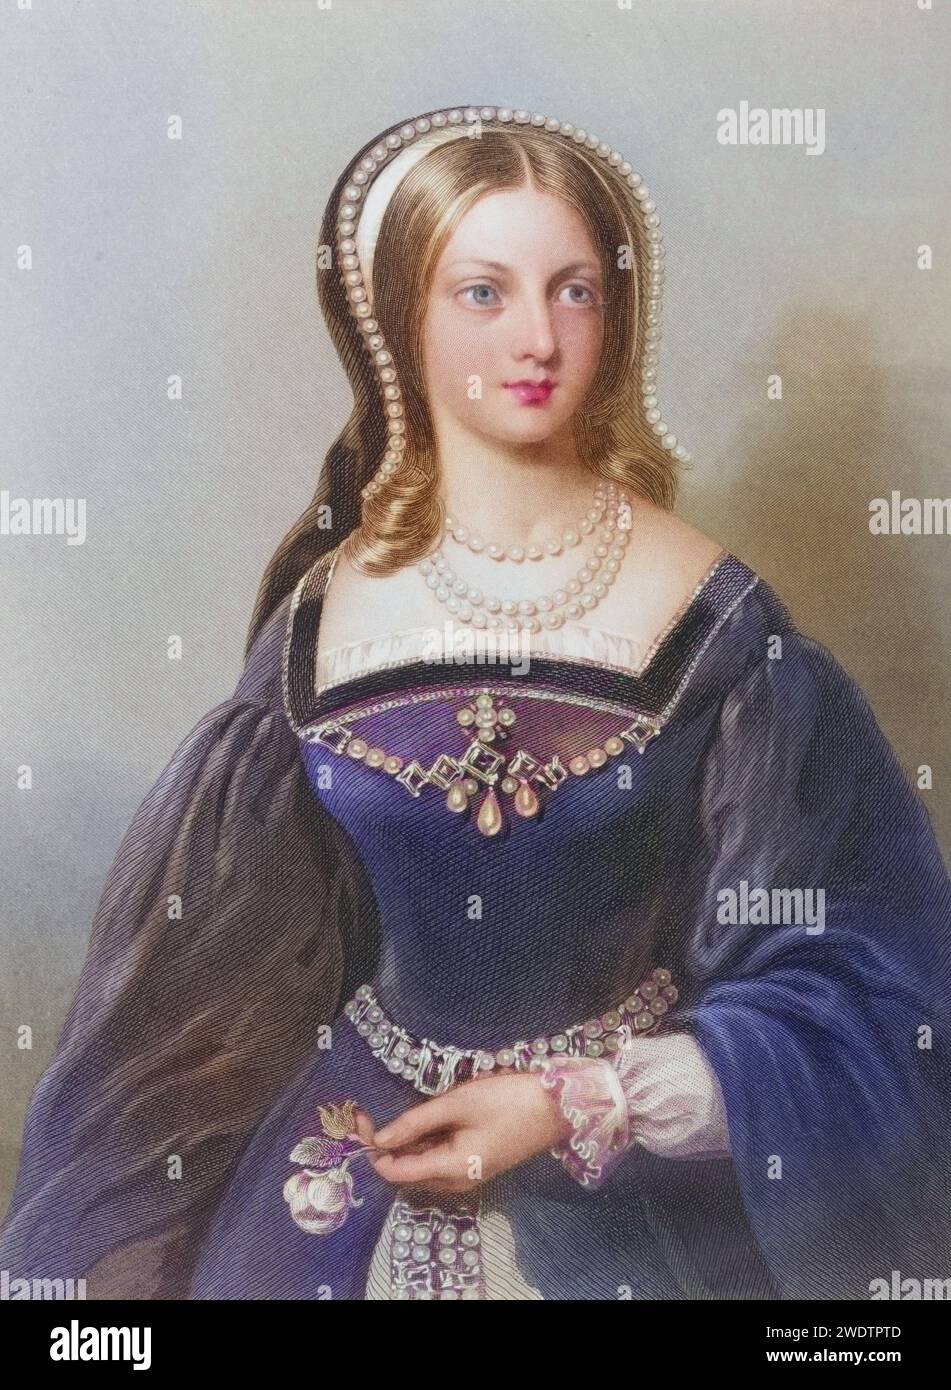 Lady Jane Grey, auch bekannt als Lady Jane Dudley, 1537-1554. Titularkönigin von England für neun Tage im Jahr 1553. Hingerichtet von Mary Tudor, Historisch, digital restaurierte Reproduktion von einer Vorlage aus dem 19. Jahrhundert, Datum nicht angegeben Stockfoto